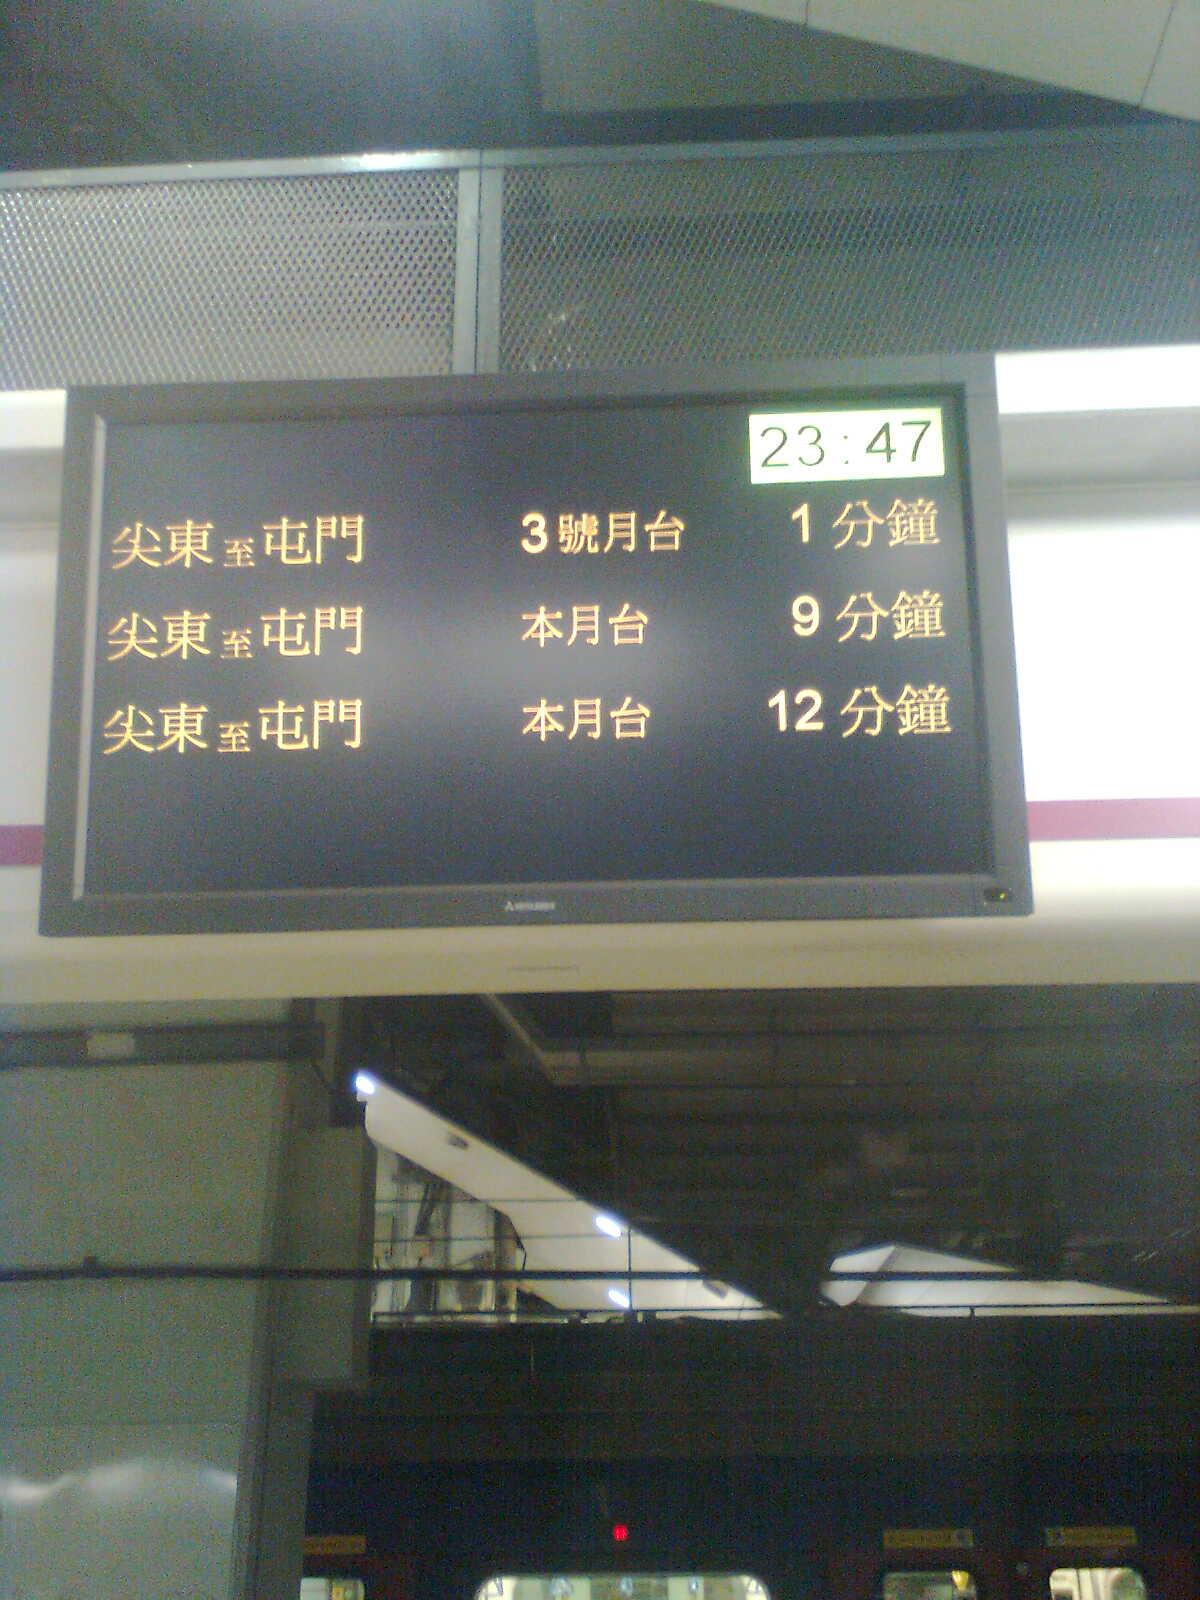 紅墈站西鐵線2號月台(壹).jpg